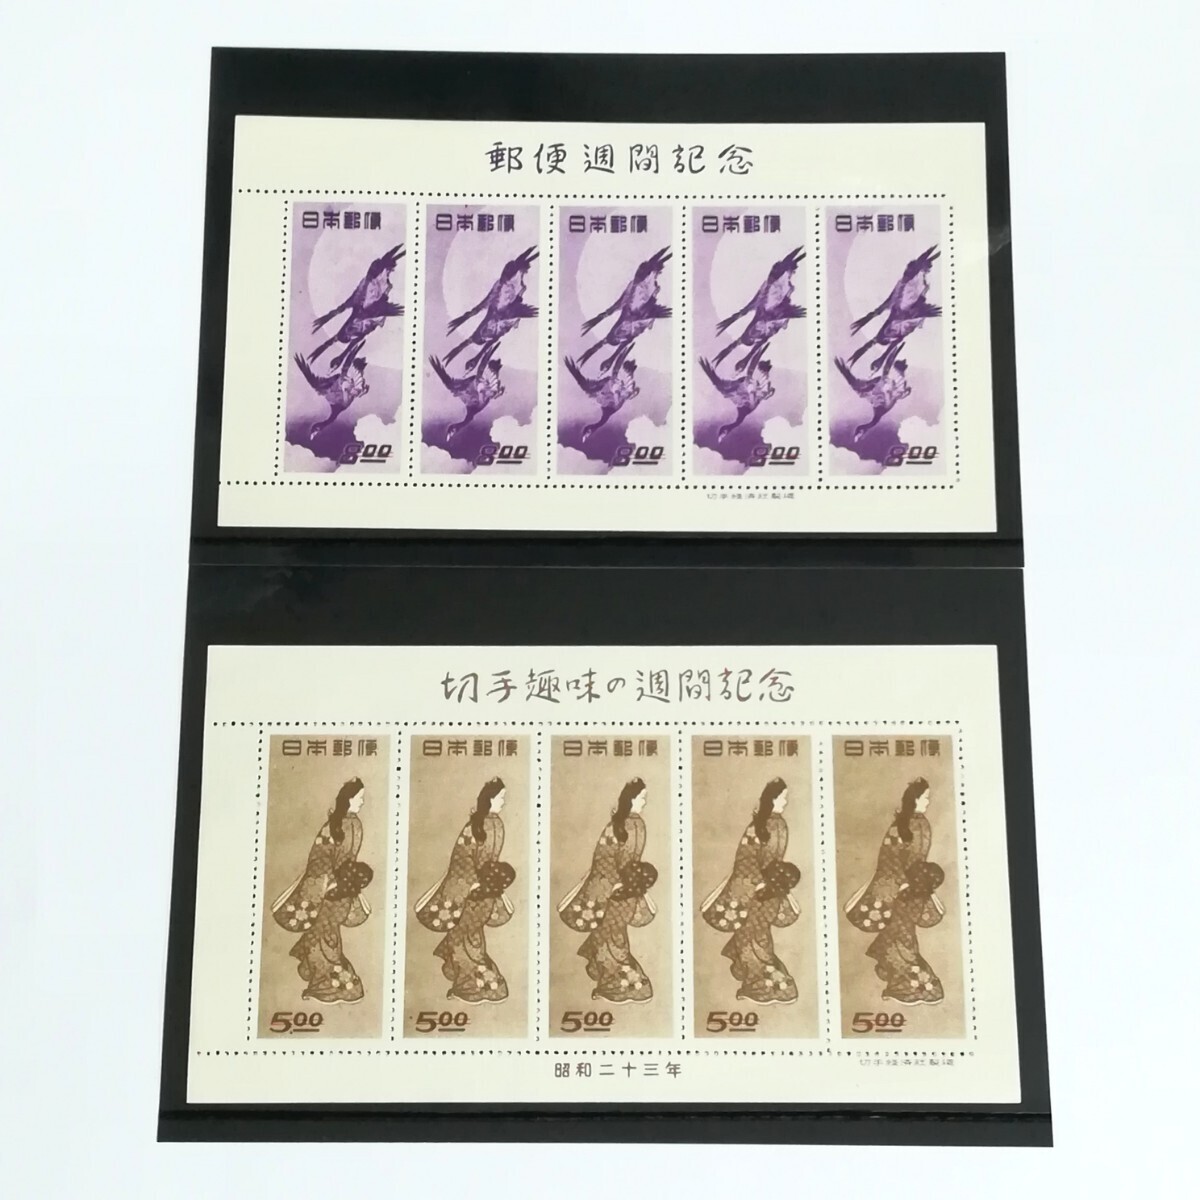 切手 『見返り美人』&『月に雁』のシートセット - 使用済切手/官製はがき